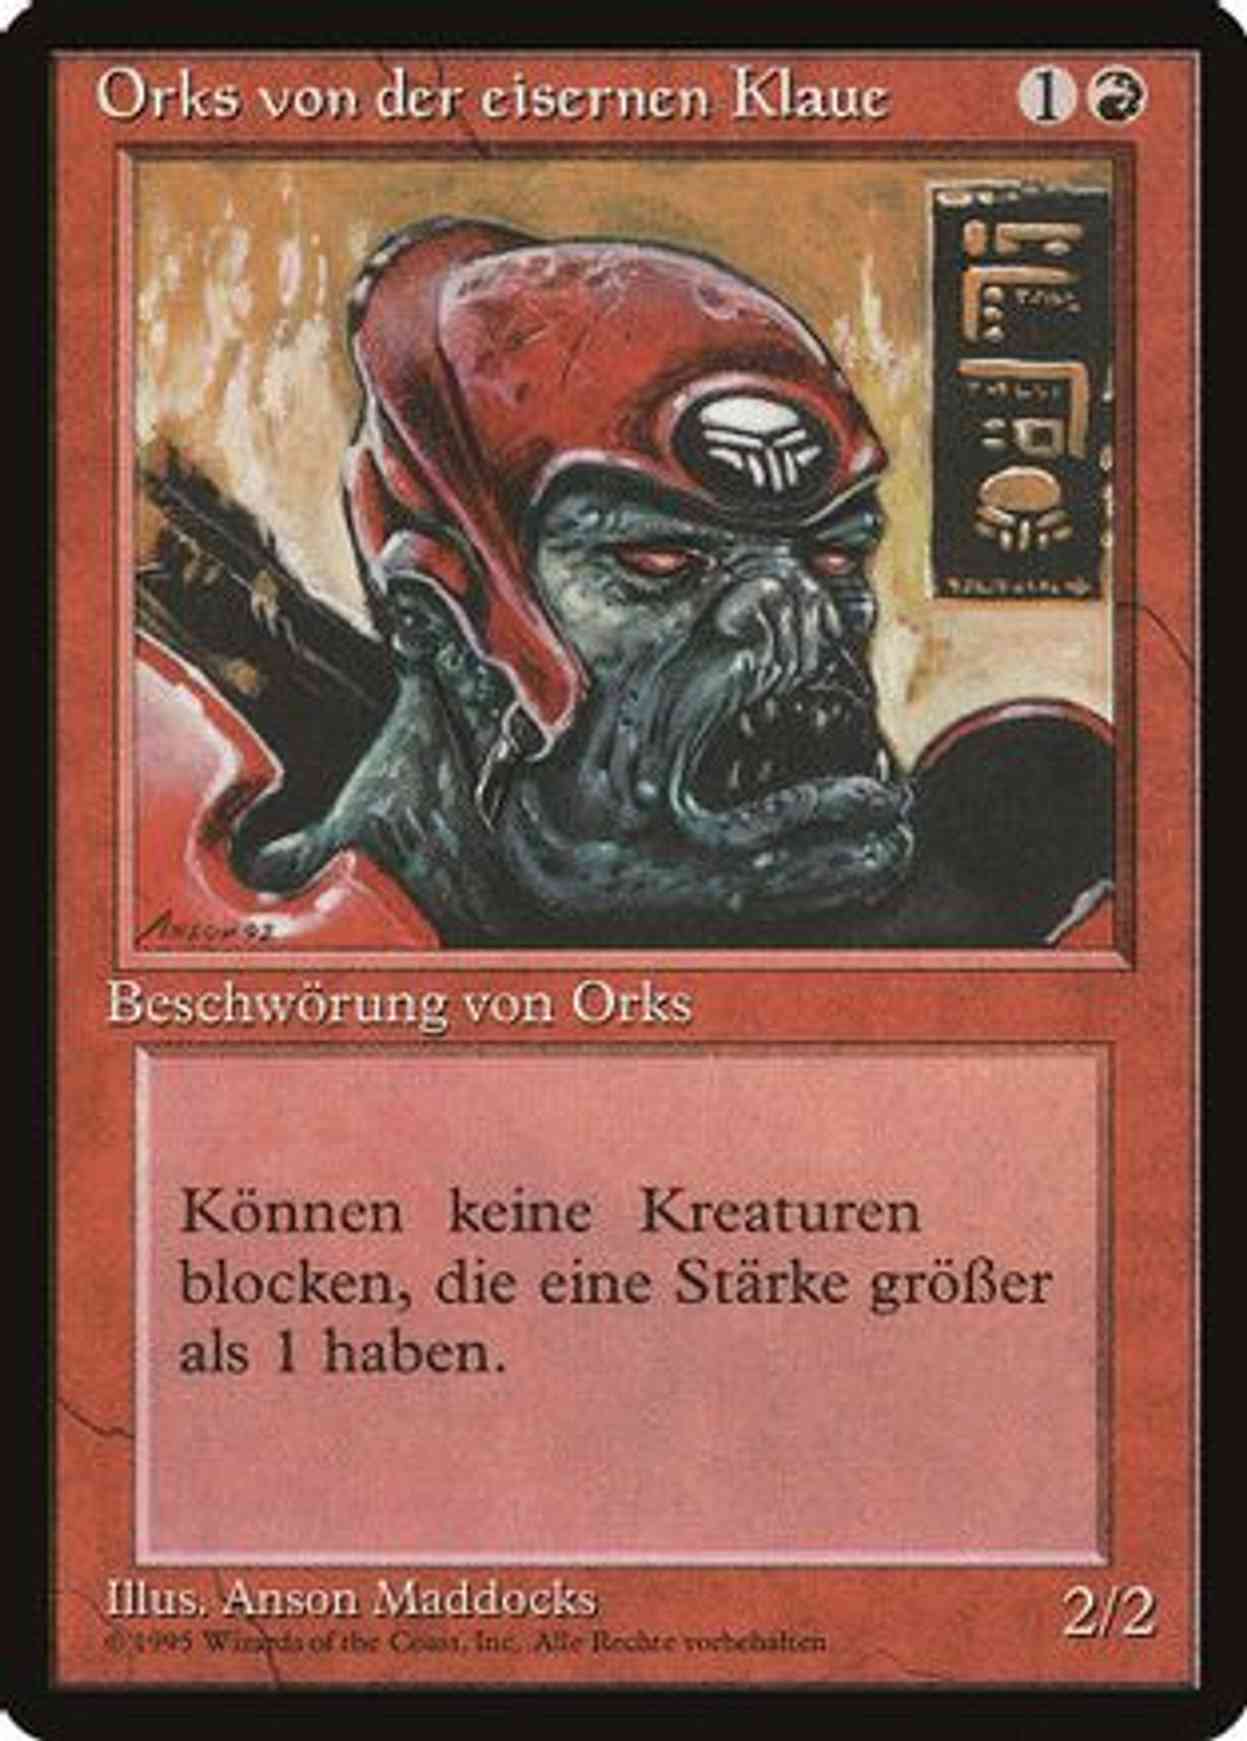 Ironclaw Orcs (German) - "Orks von der eisernen Klaue" magic card front